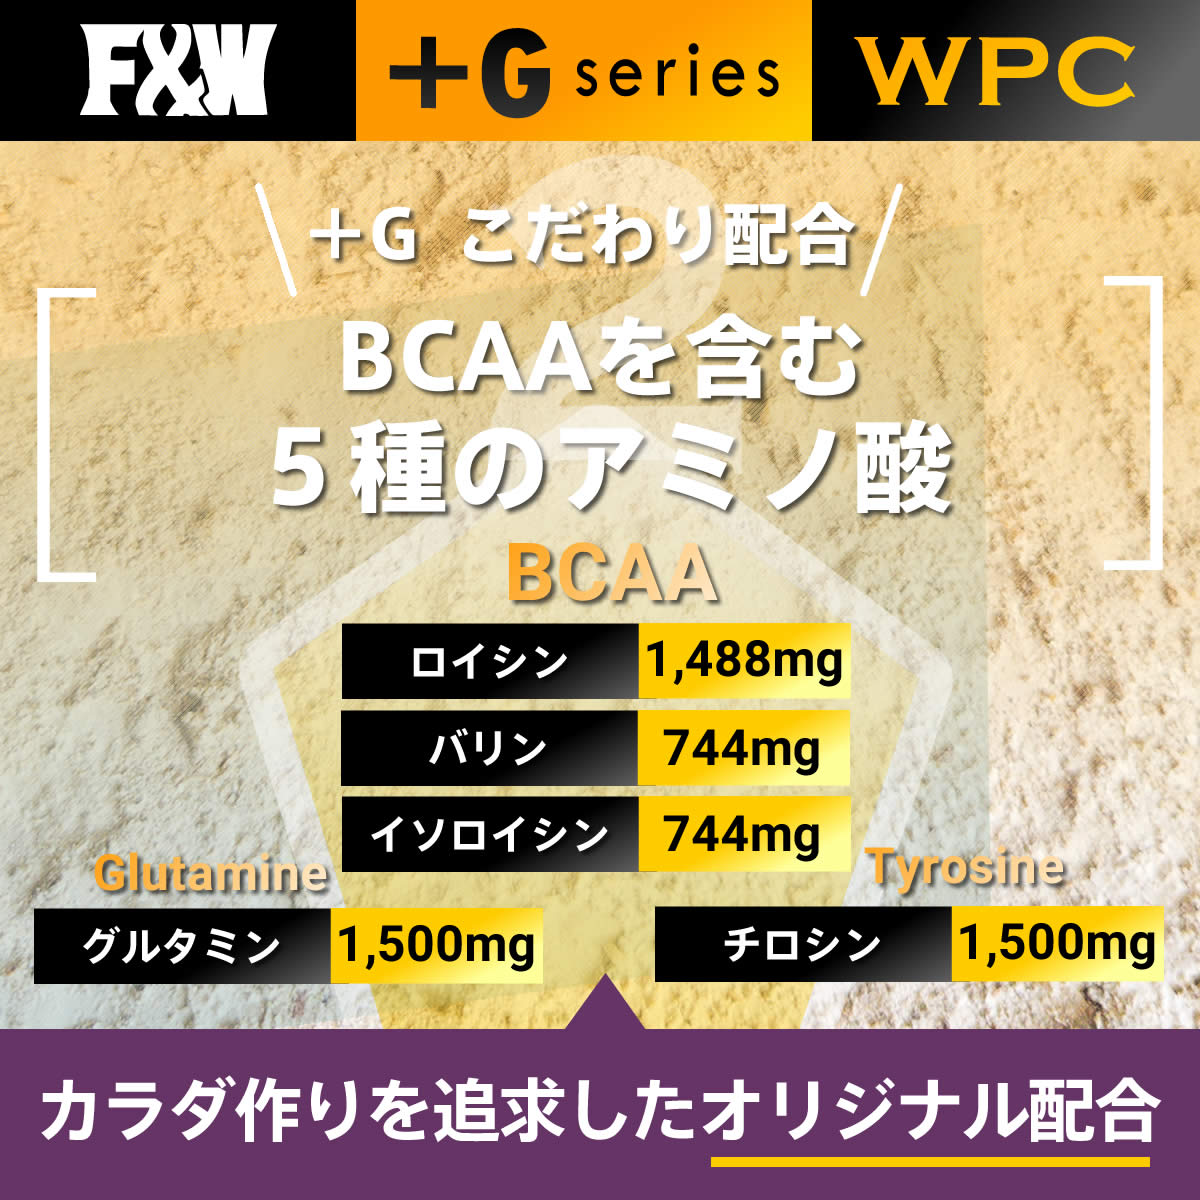 +Gシリーズ WPC カフェオレ風味 750g